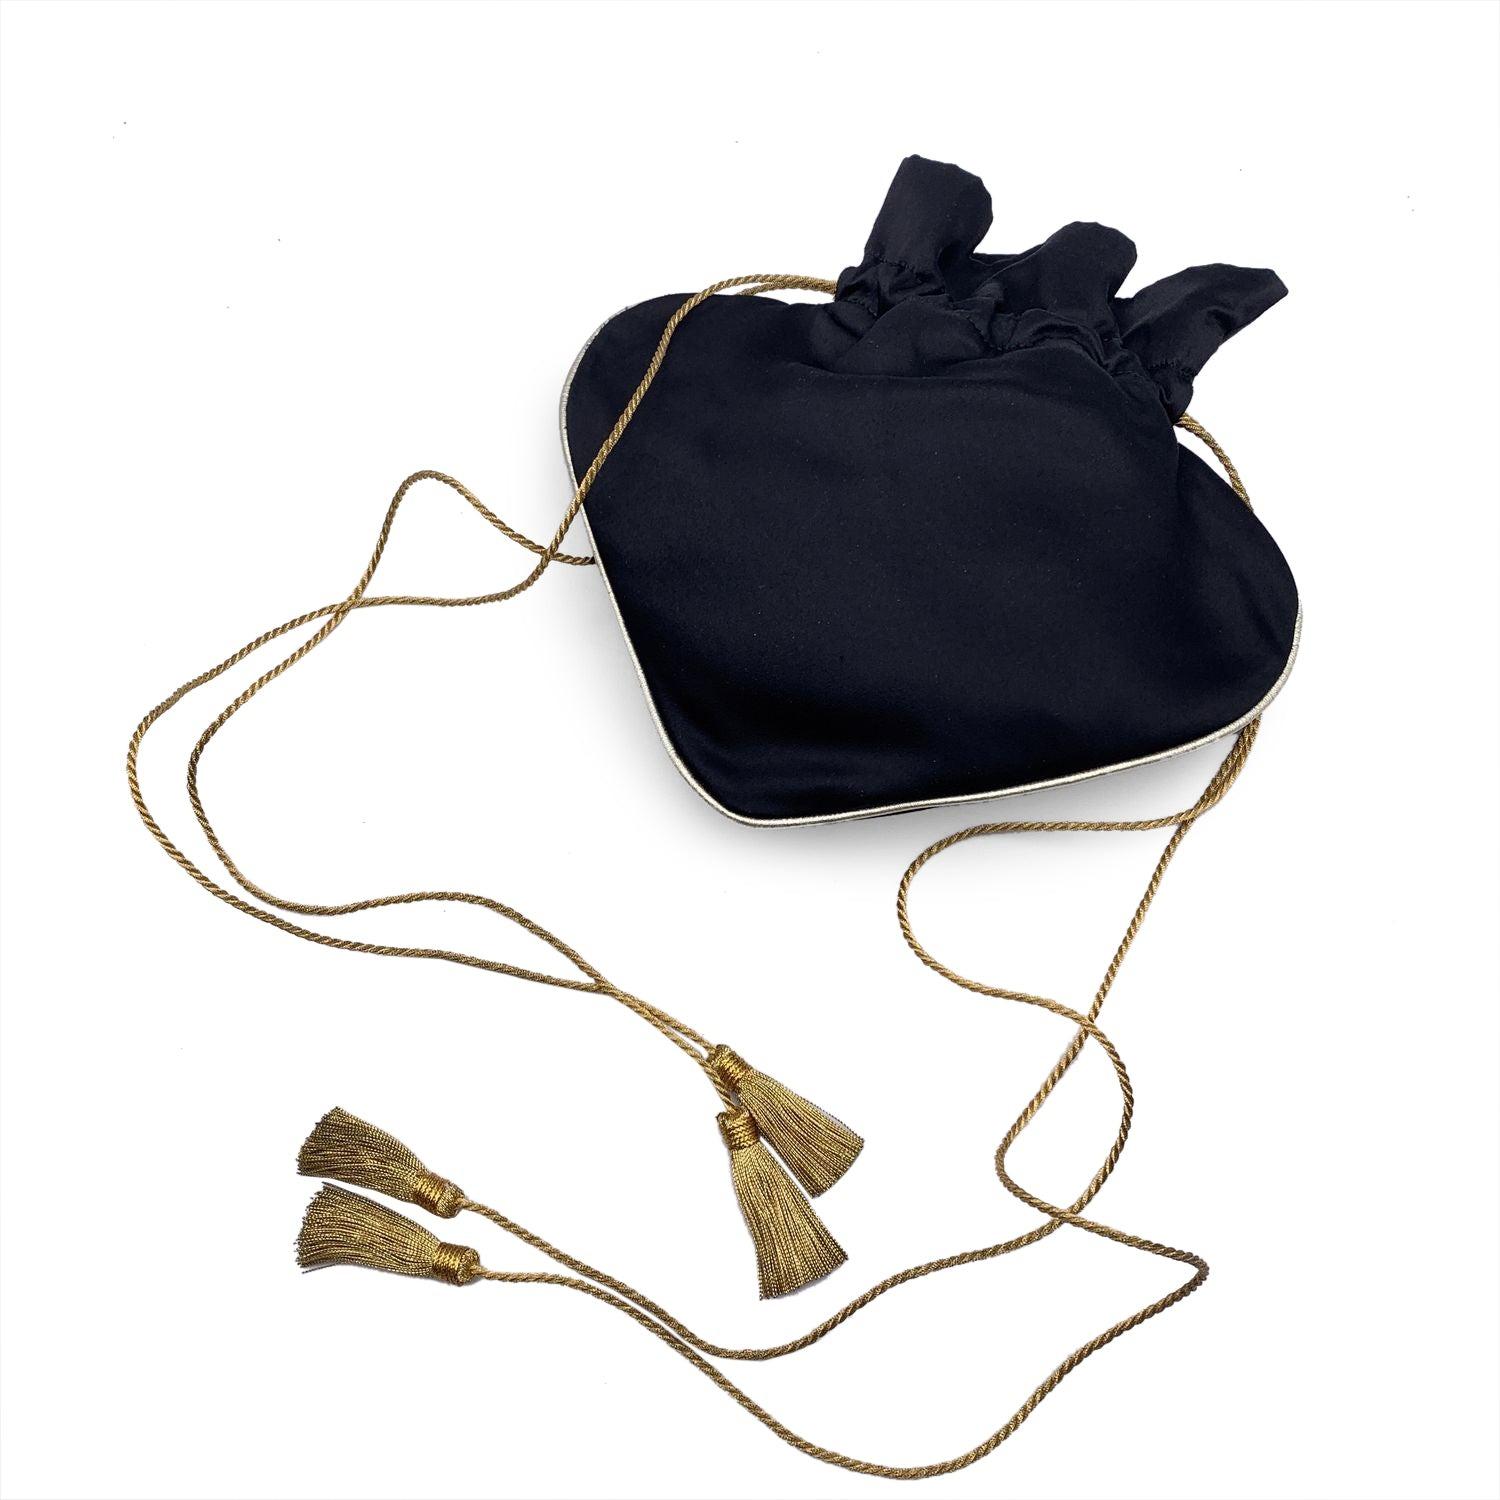 Magnifique petit sac de soirée à cordon de Yves Saint Laurent. En satin noir et garni de métal doré, le sac présente une forme fantaisie en forme d'as de pique. Fermeture par cordon de serrage. Doublure intérieure noire. Bandoulière réglable. La